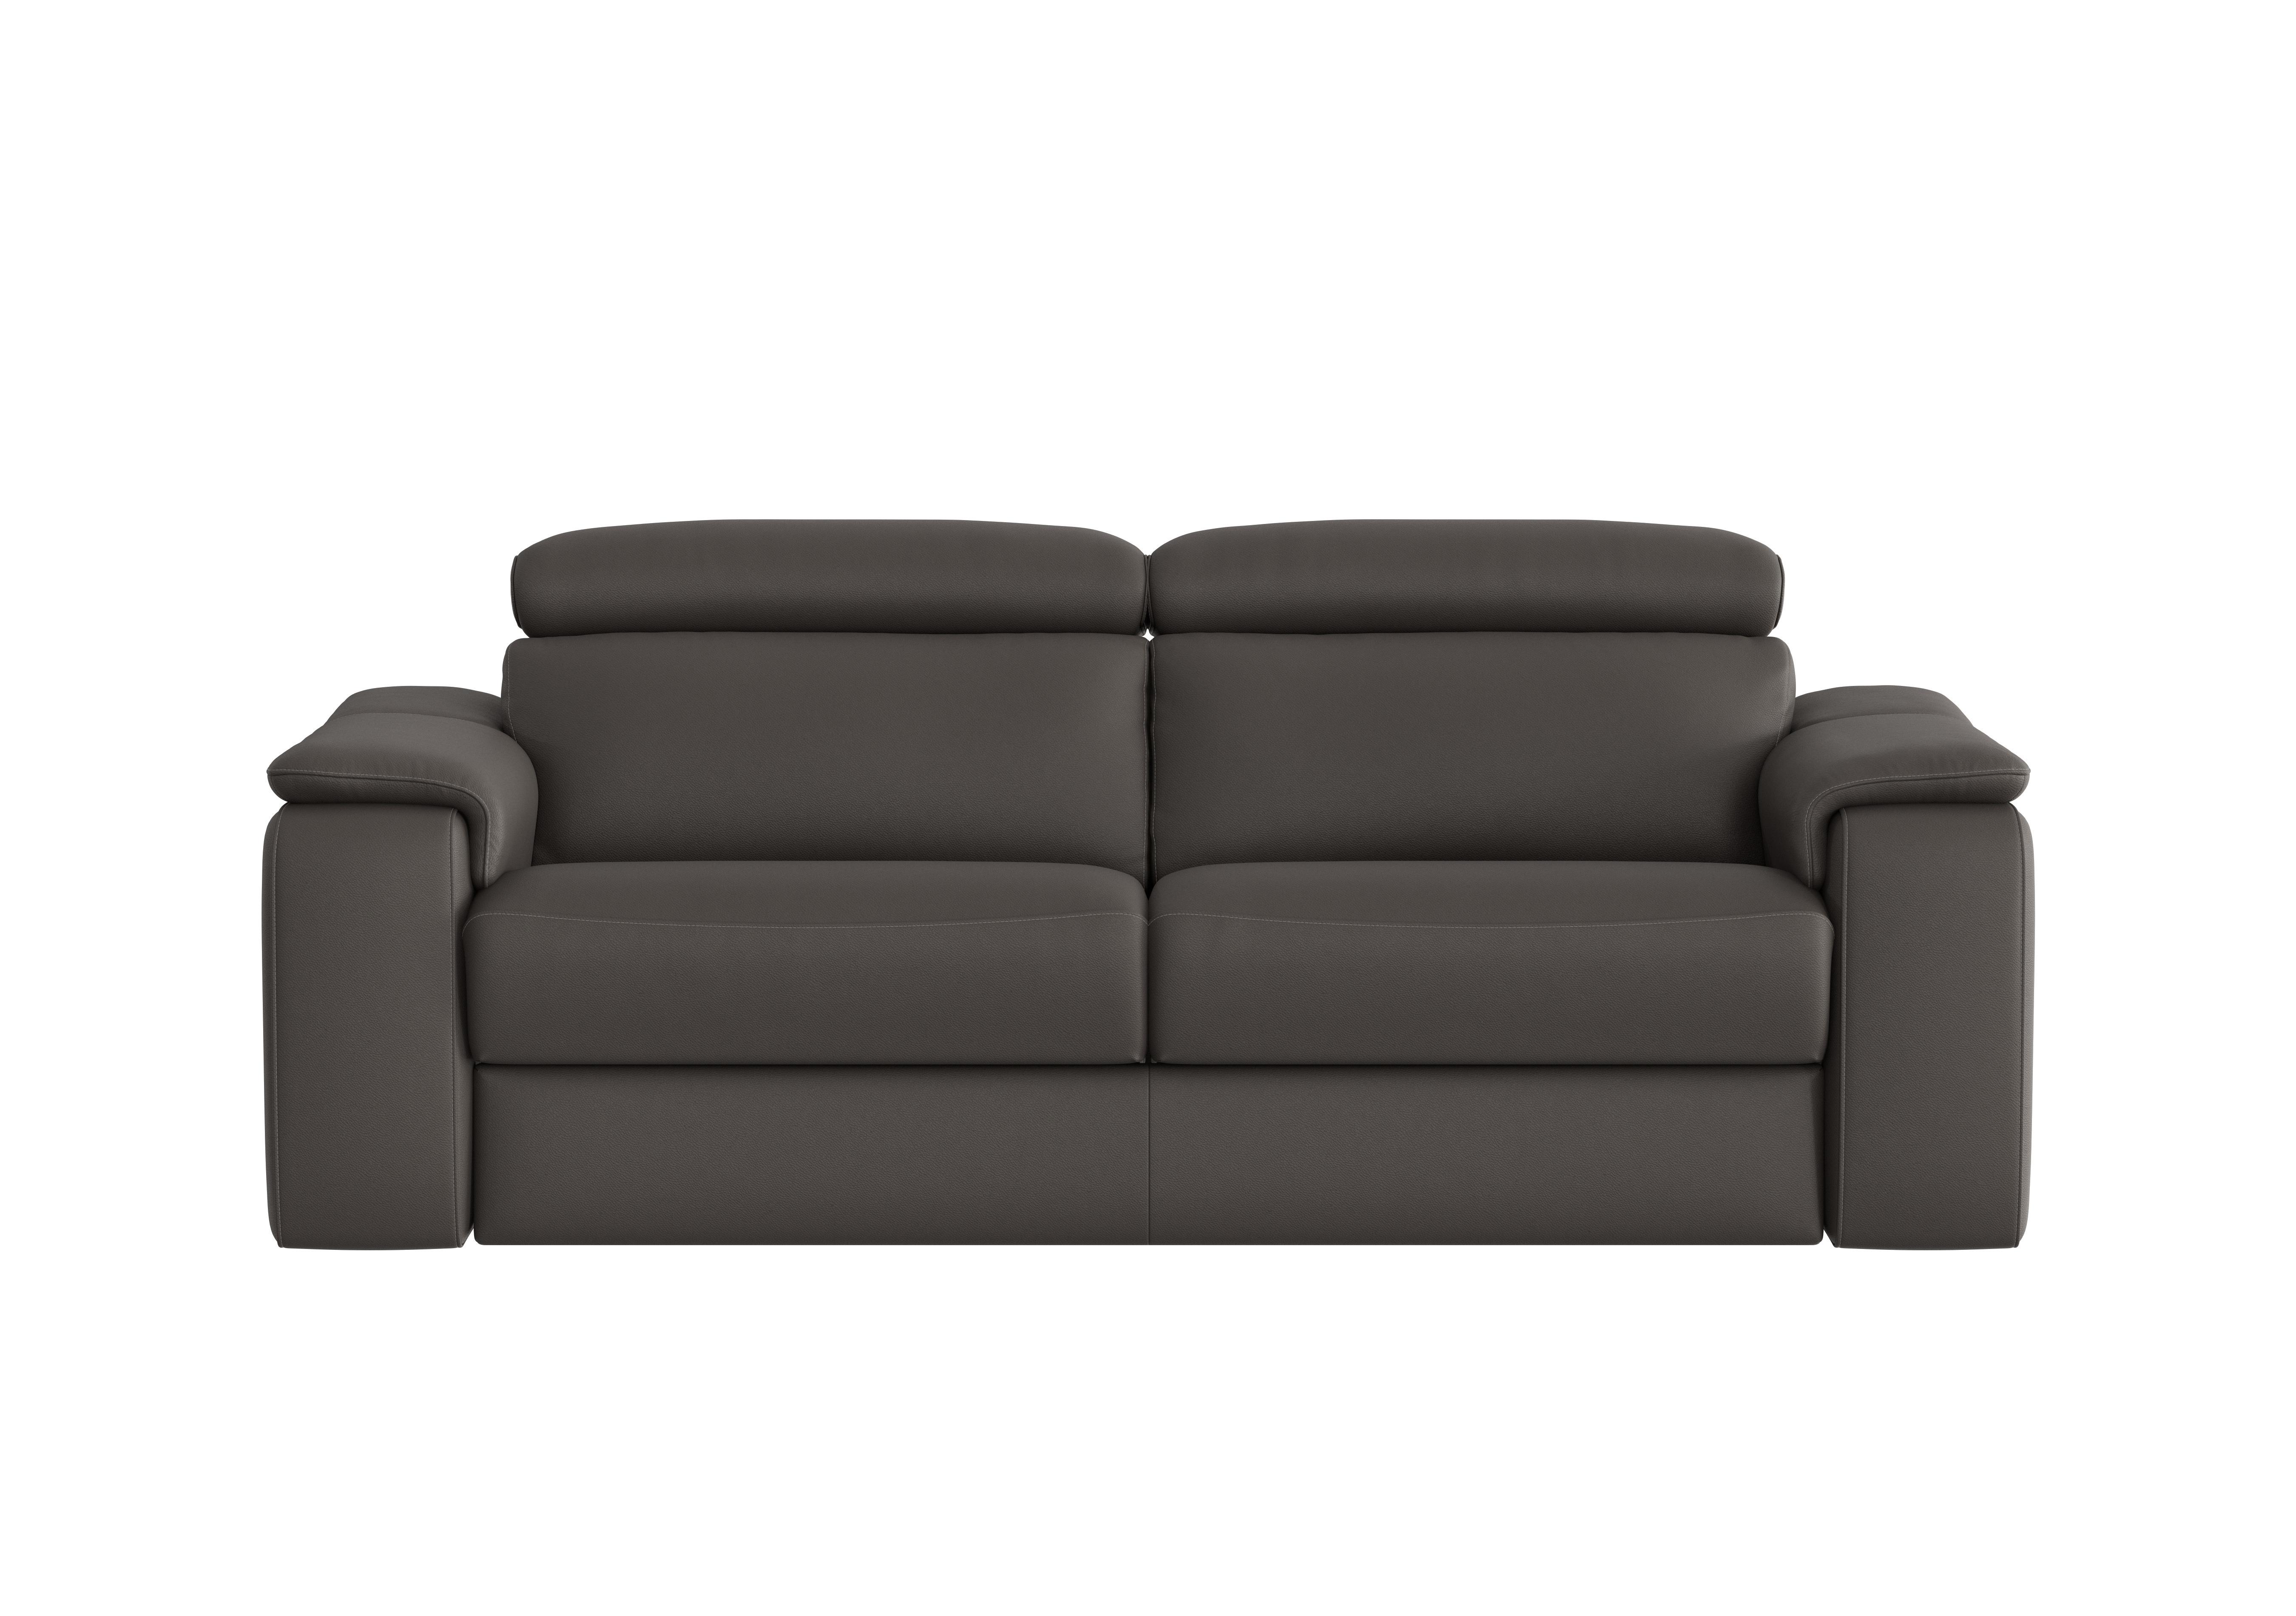 Davide 3 Seater Leather Sofa in 327 Torello Grigio Scuro on Furniture Village